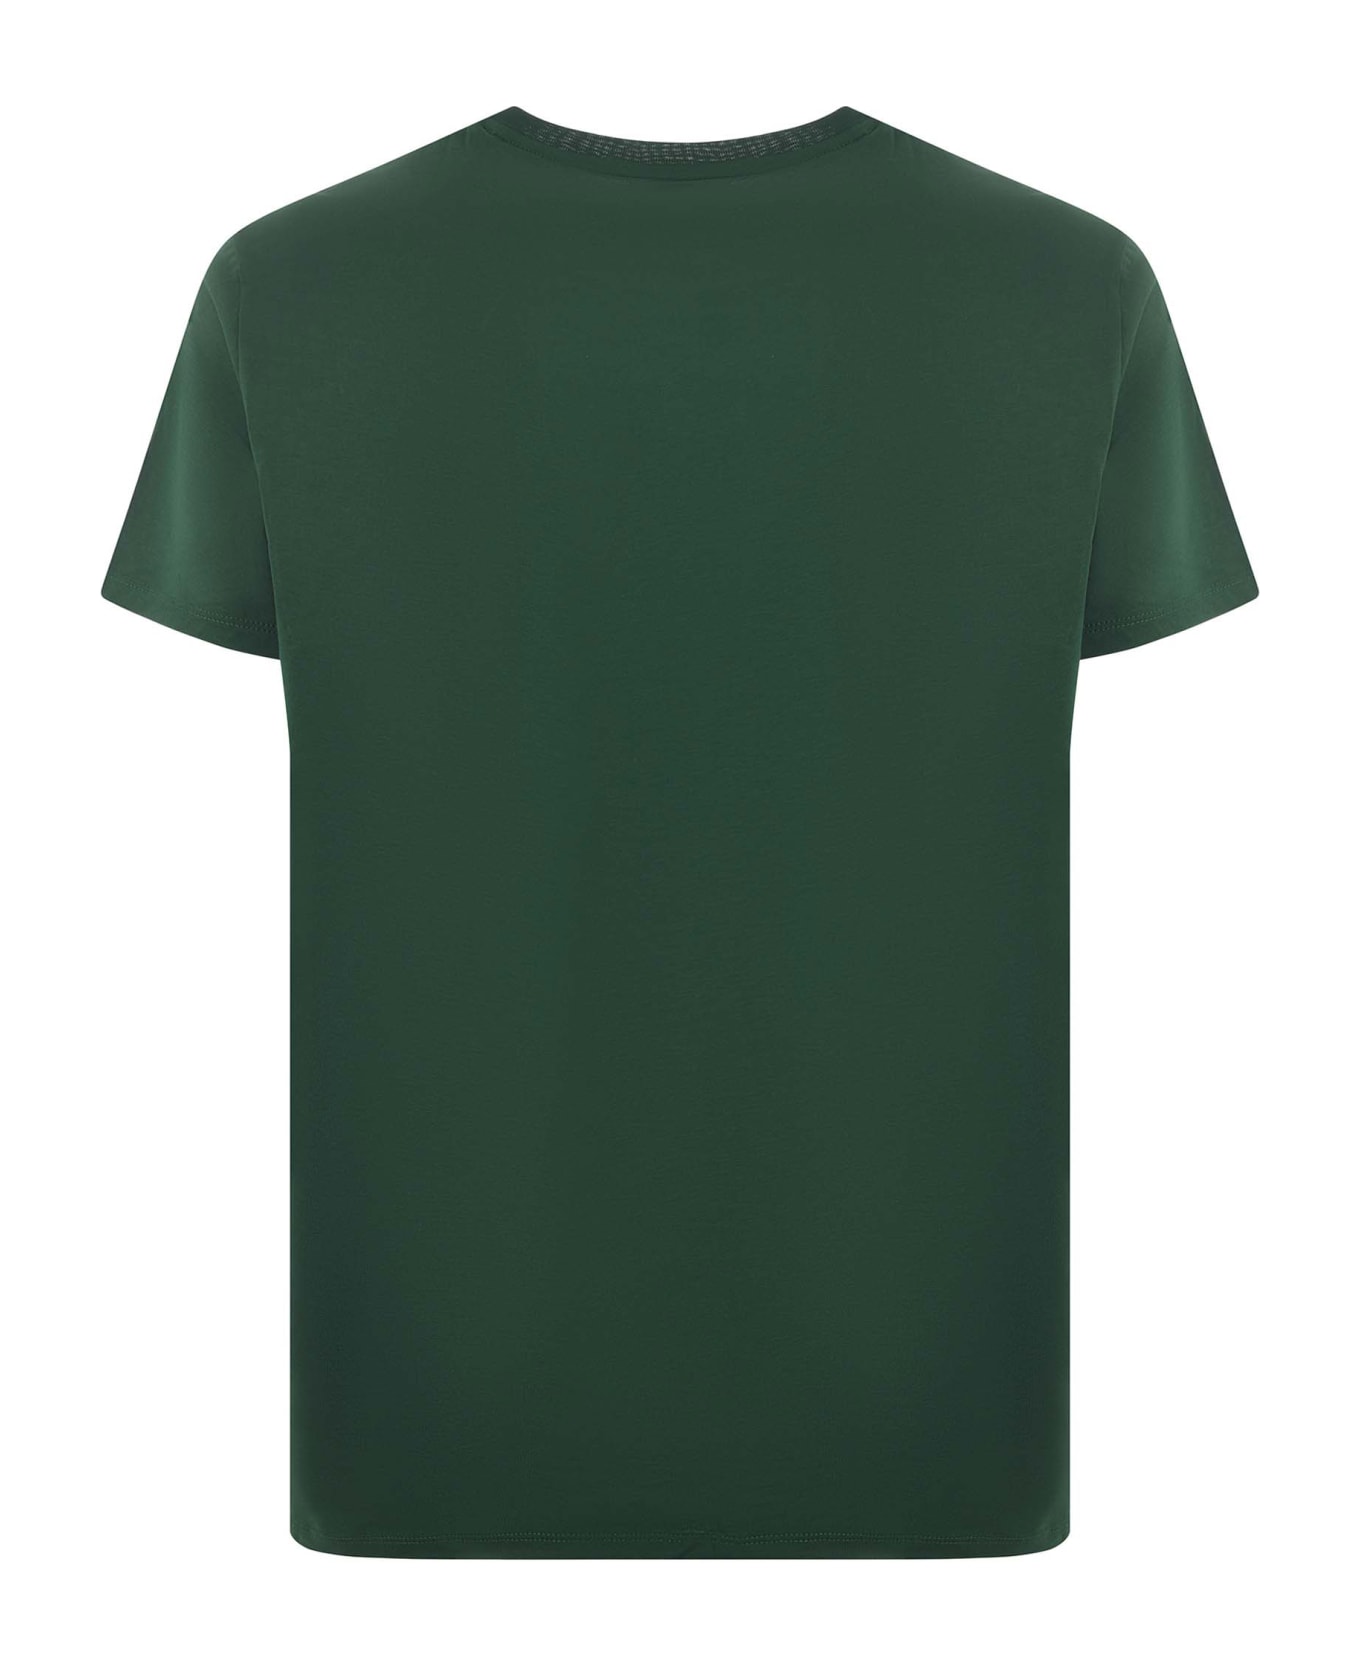 Lacoste Pima Cotton T-shirt - Verde militare シャツ